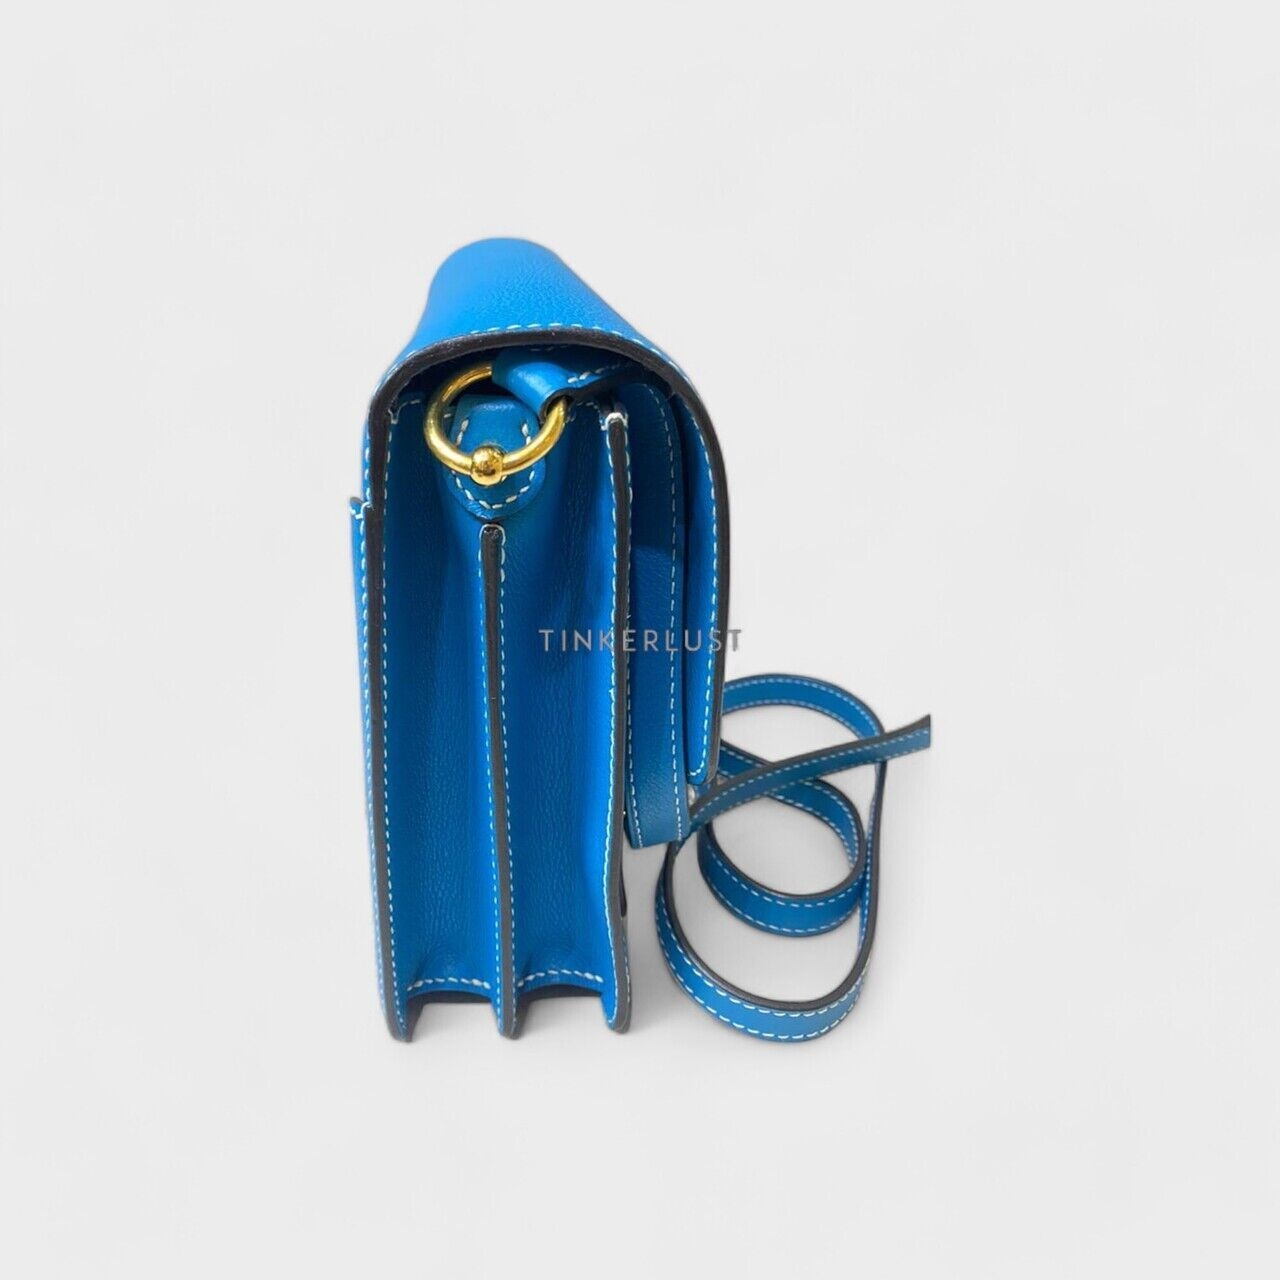 Hermes Roulis 23 Bleu Zanzibar #A GHW Sling Bag